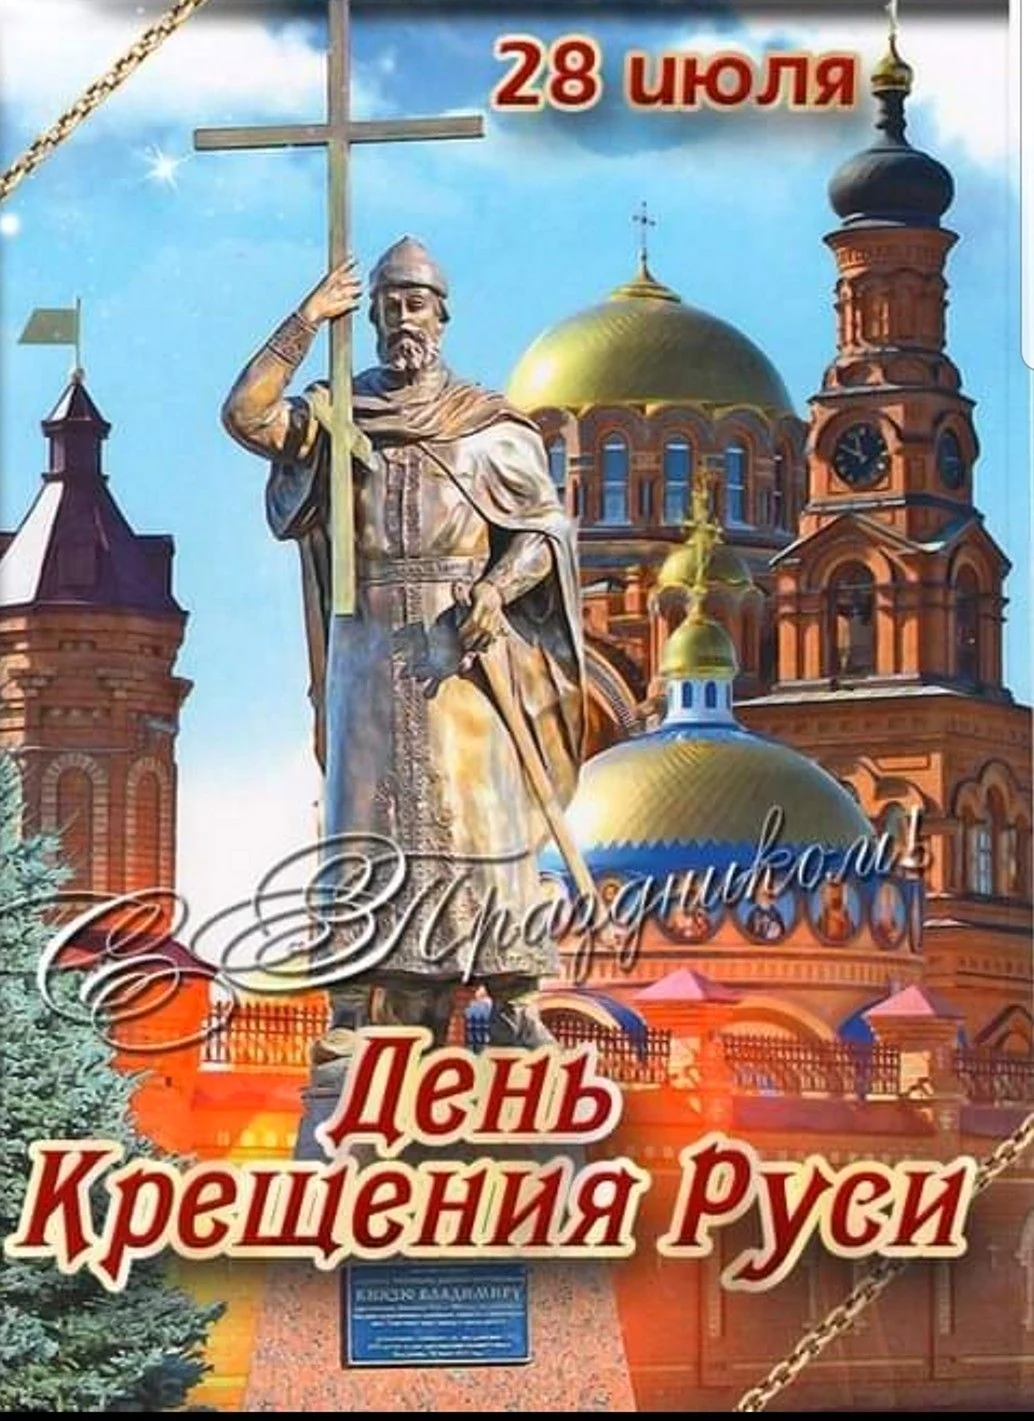 Святой равноапостольный князь Владимир памятник. Поздравление на праздник